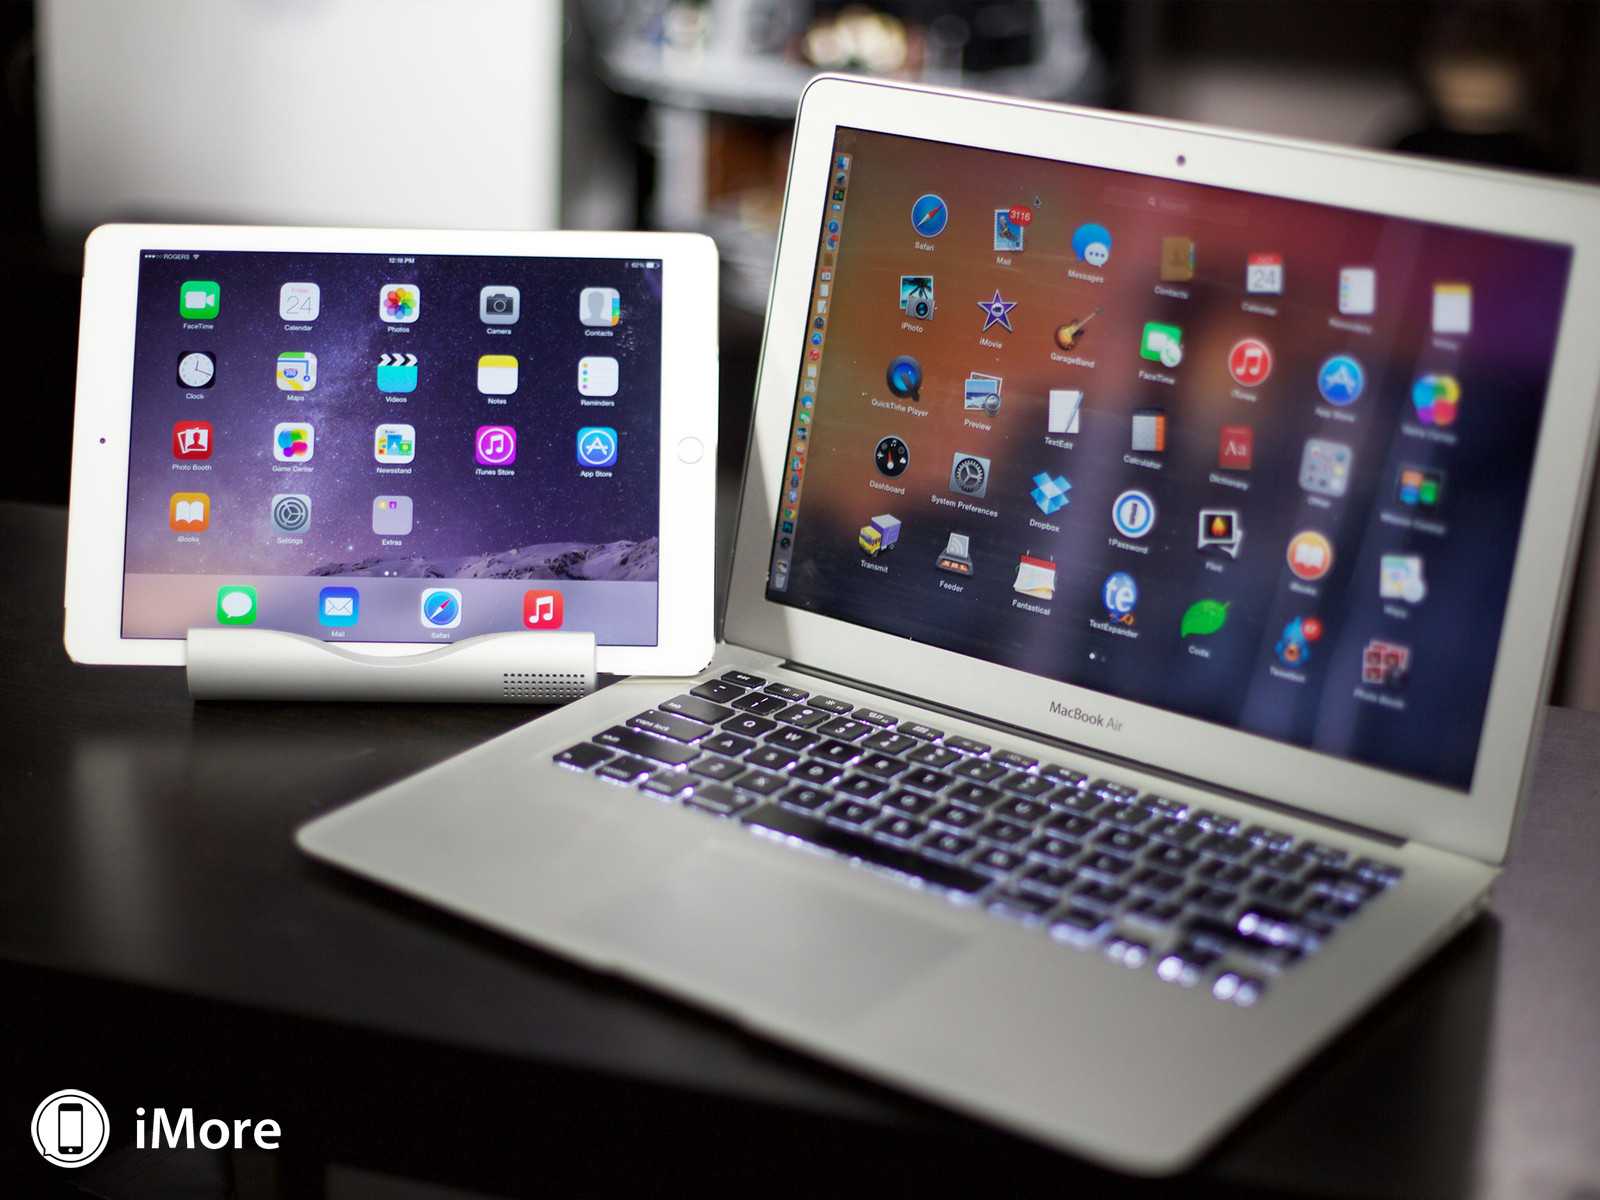 Что лучше: планшет или ноутбук?